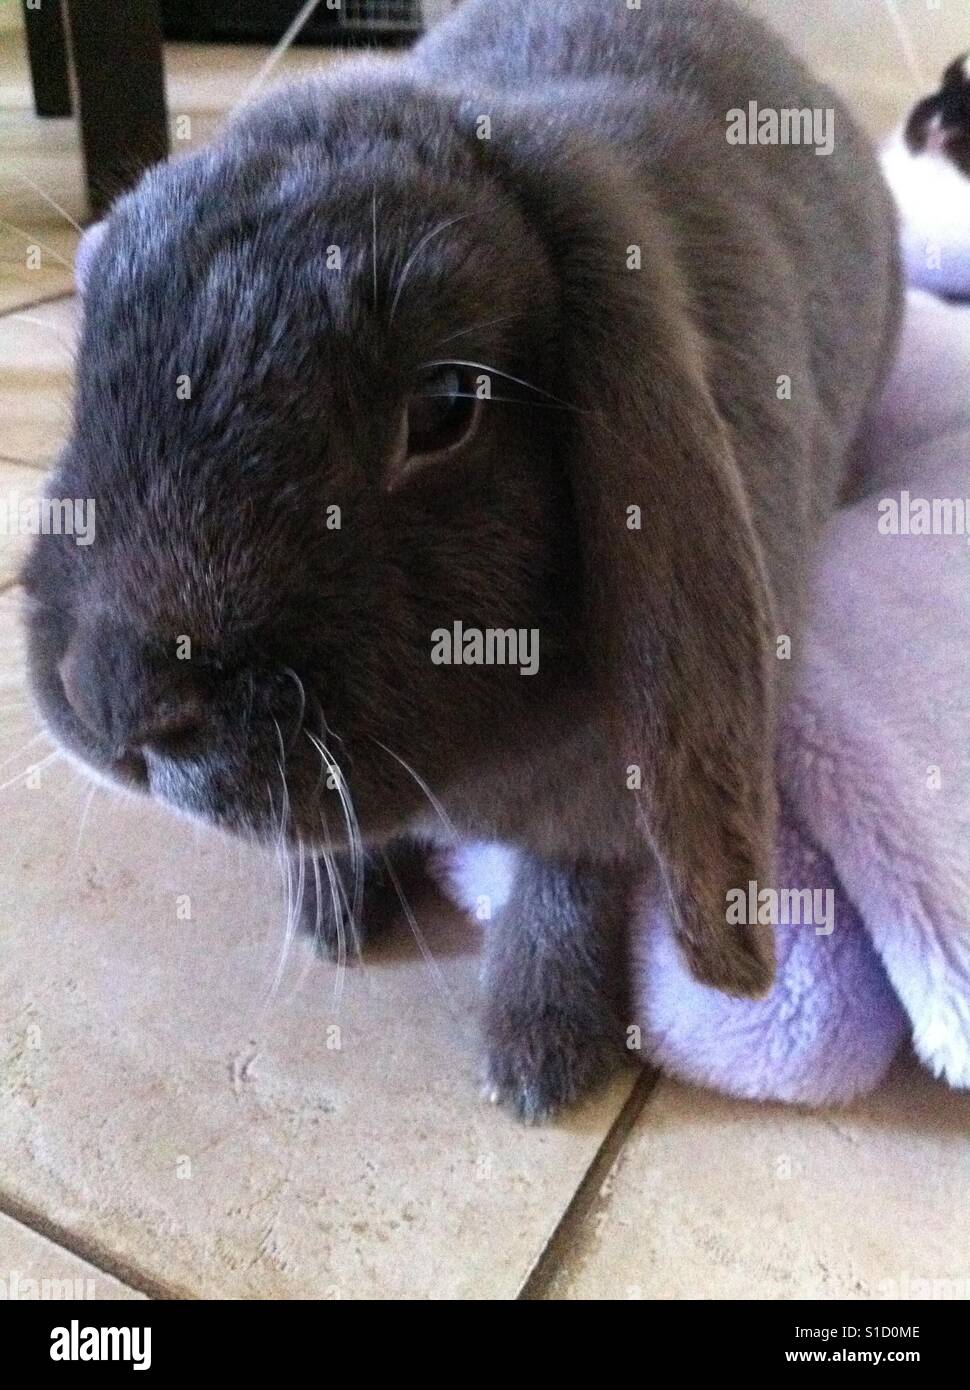 Curious rabbit Stock Photo